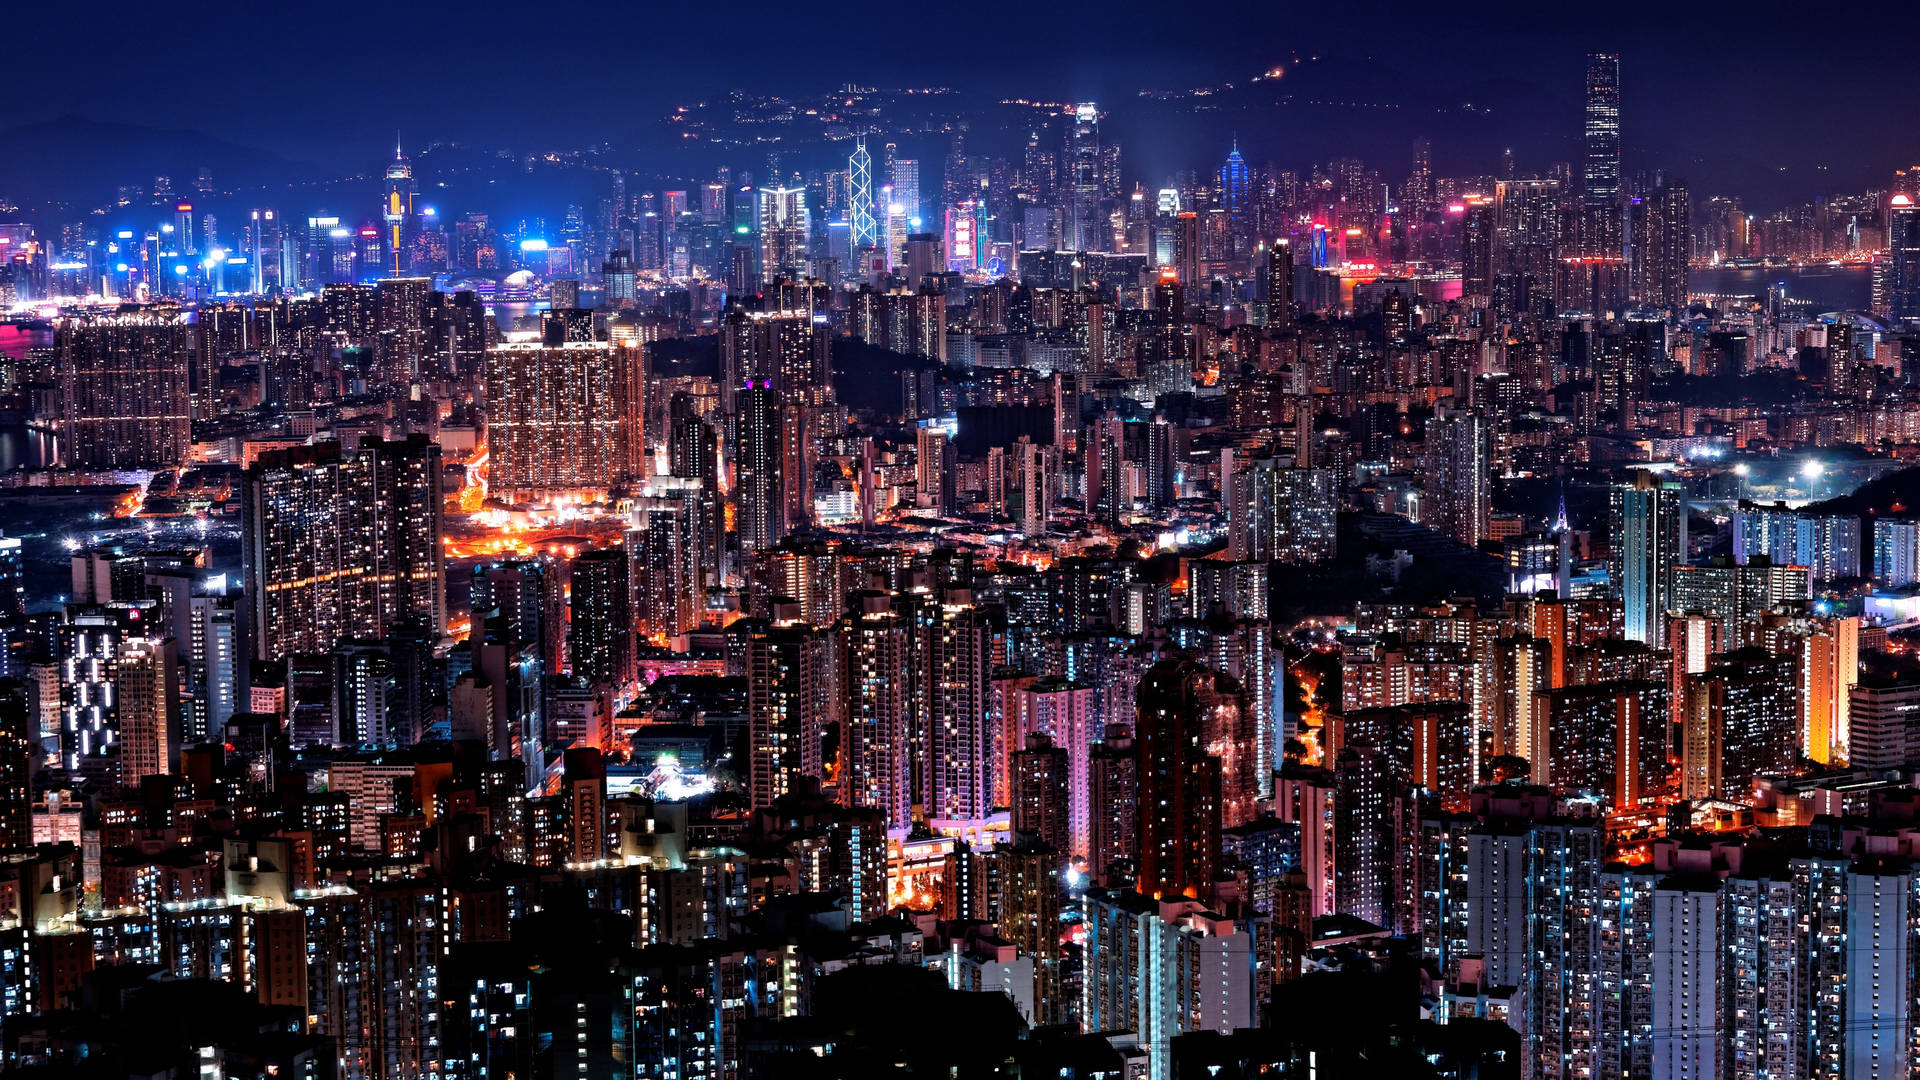 4kultra Hd Stad I Hongkong Med Ljusa Byggnader. Wallpaper